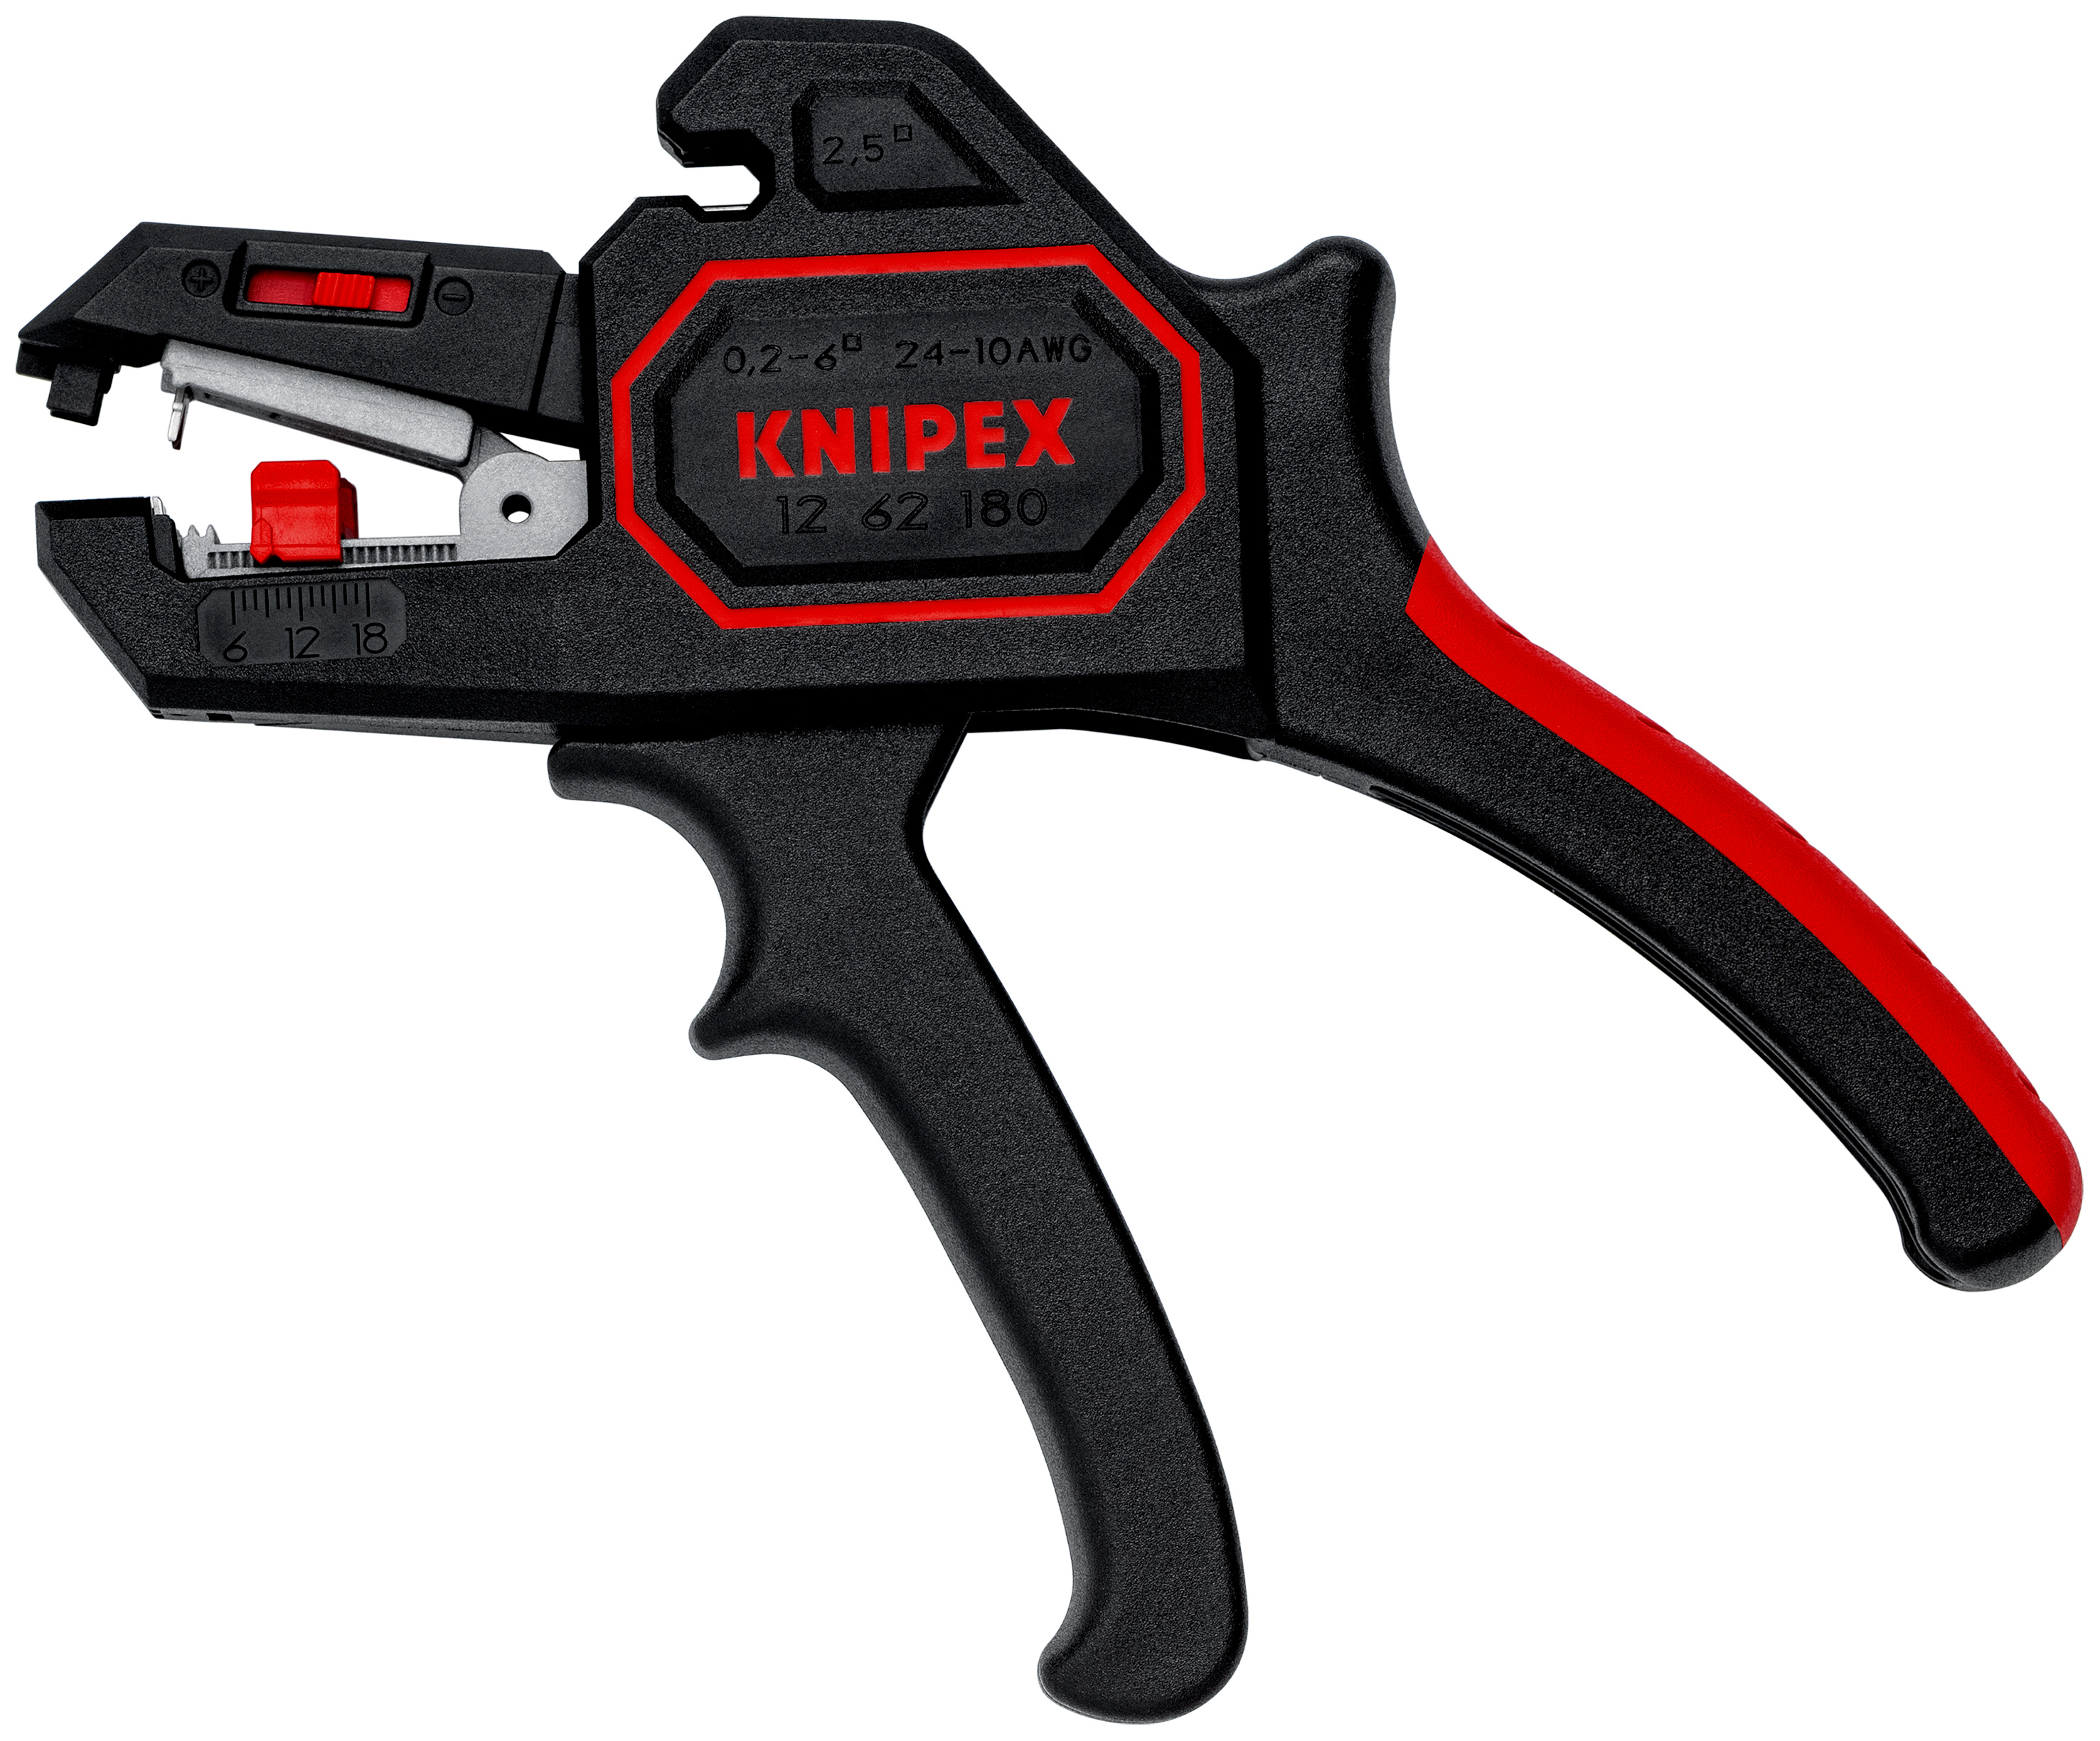 KNIPEX KNIPEX 12 40 200SB SELF ADJUSTING INSULATION STRIPPER DRAPER STOCK NO 88979 